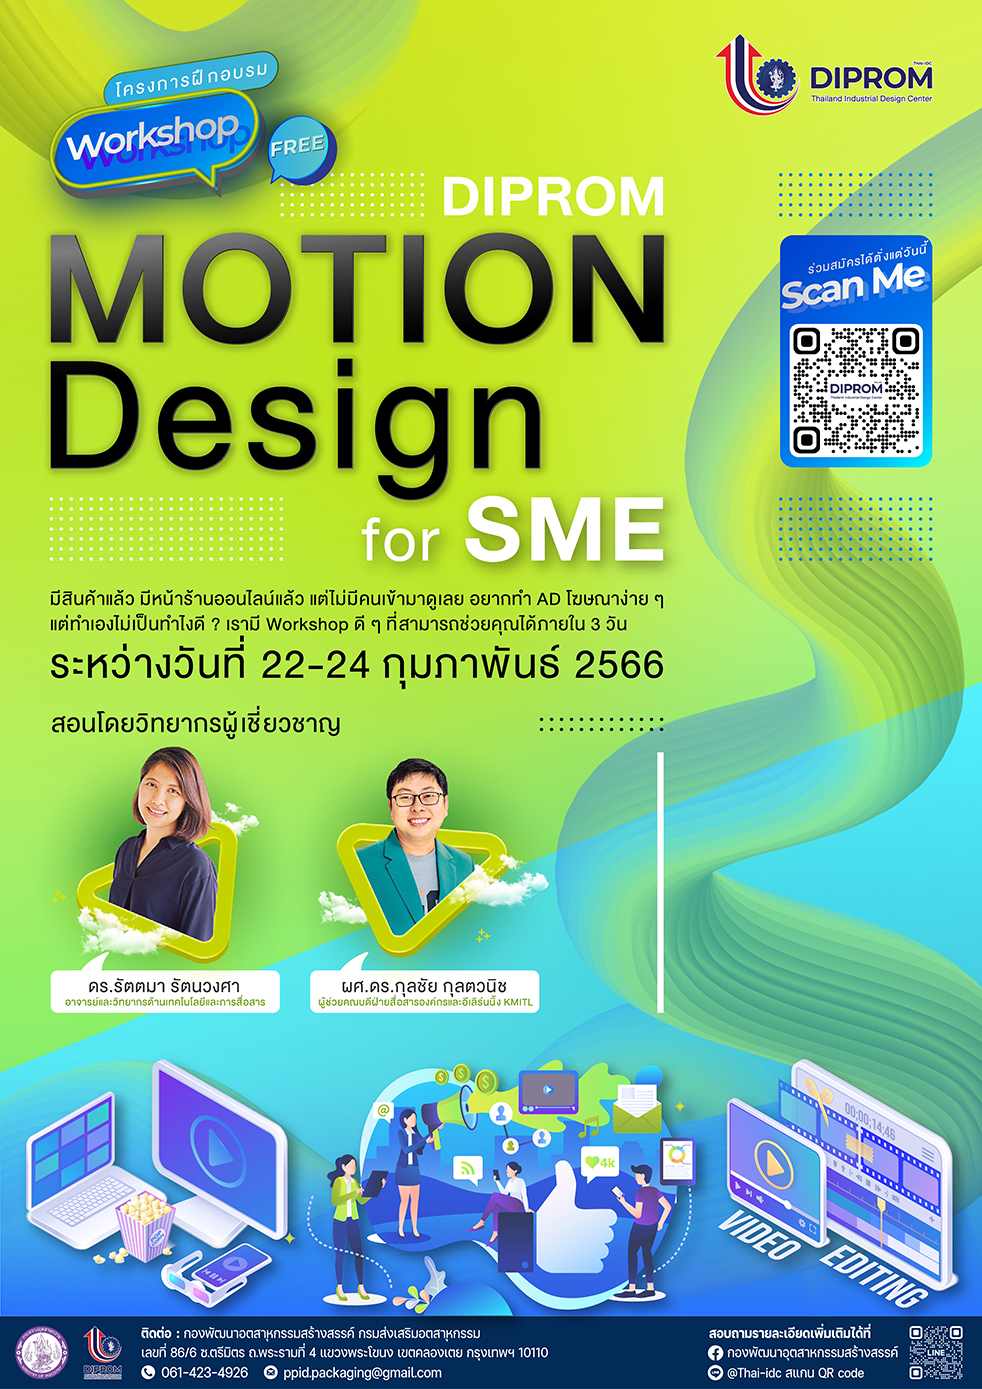 การฝึกอบรมเชิงปฏิบัติการ  “ดีพร้อมออกแบบโฆษณาเคลื่อนไหวสำหรับสื่อออนไลน์ (DIPROM Motion Design for SME)”